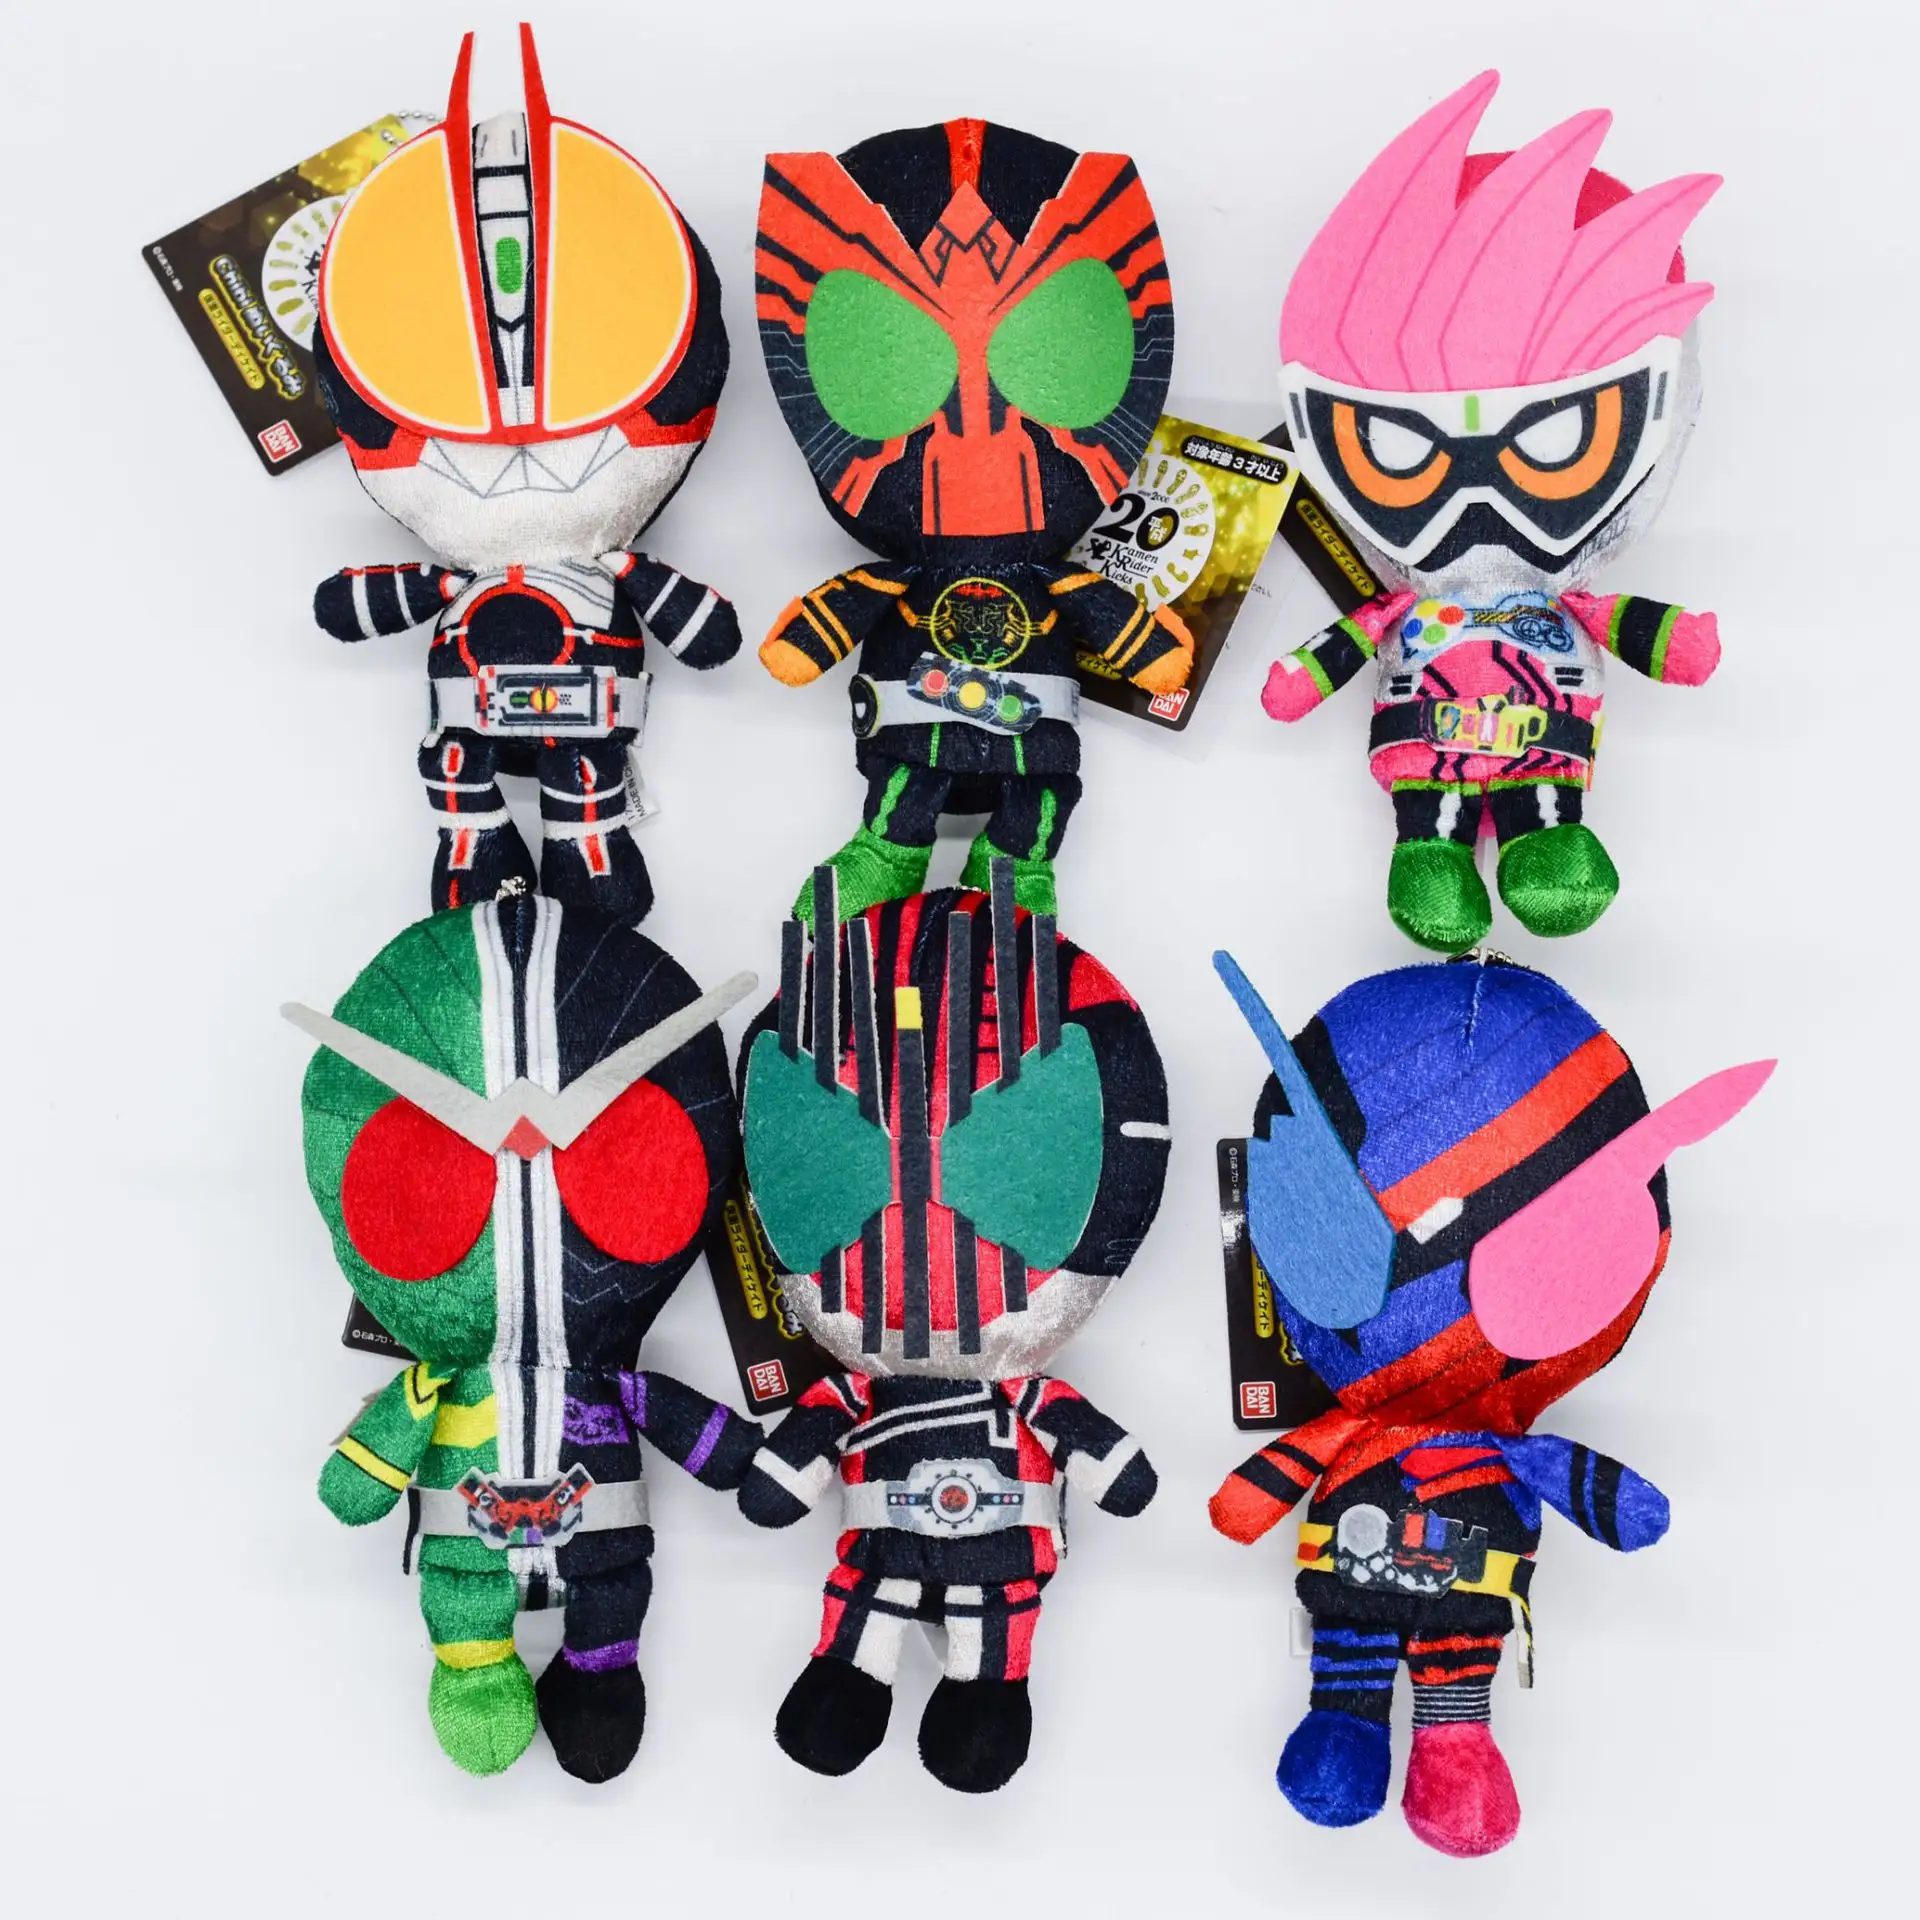 AMBR 15cm อัศวินสวมหน้ากากของเล่นชุด Kamen Rider ของที่ระลึกกระเป๋าตุ๊กตาจี้ตกแต่งขายส่ง